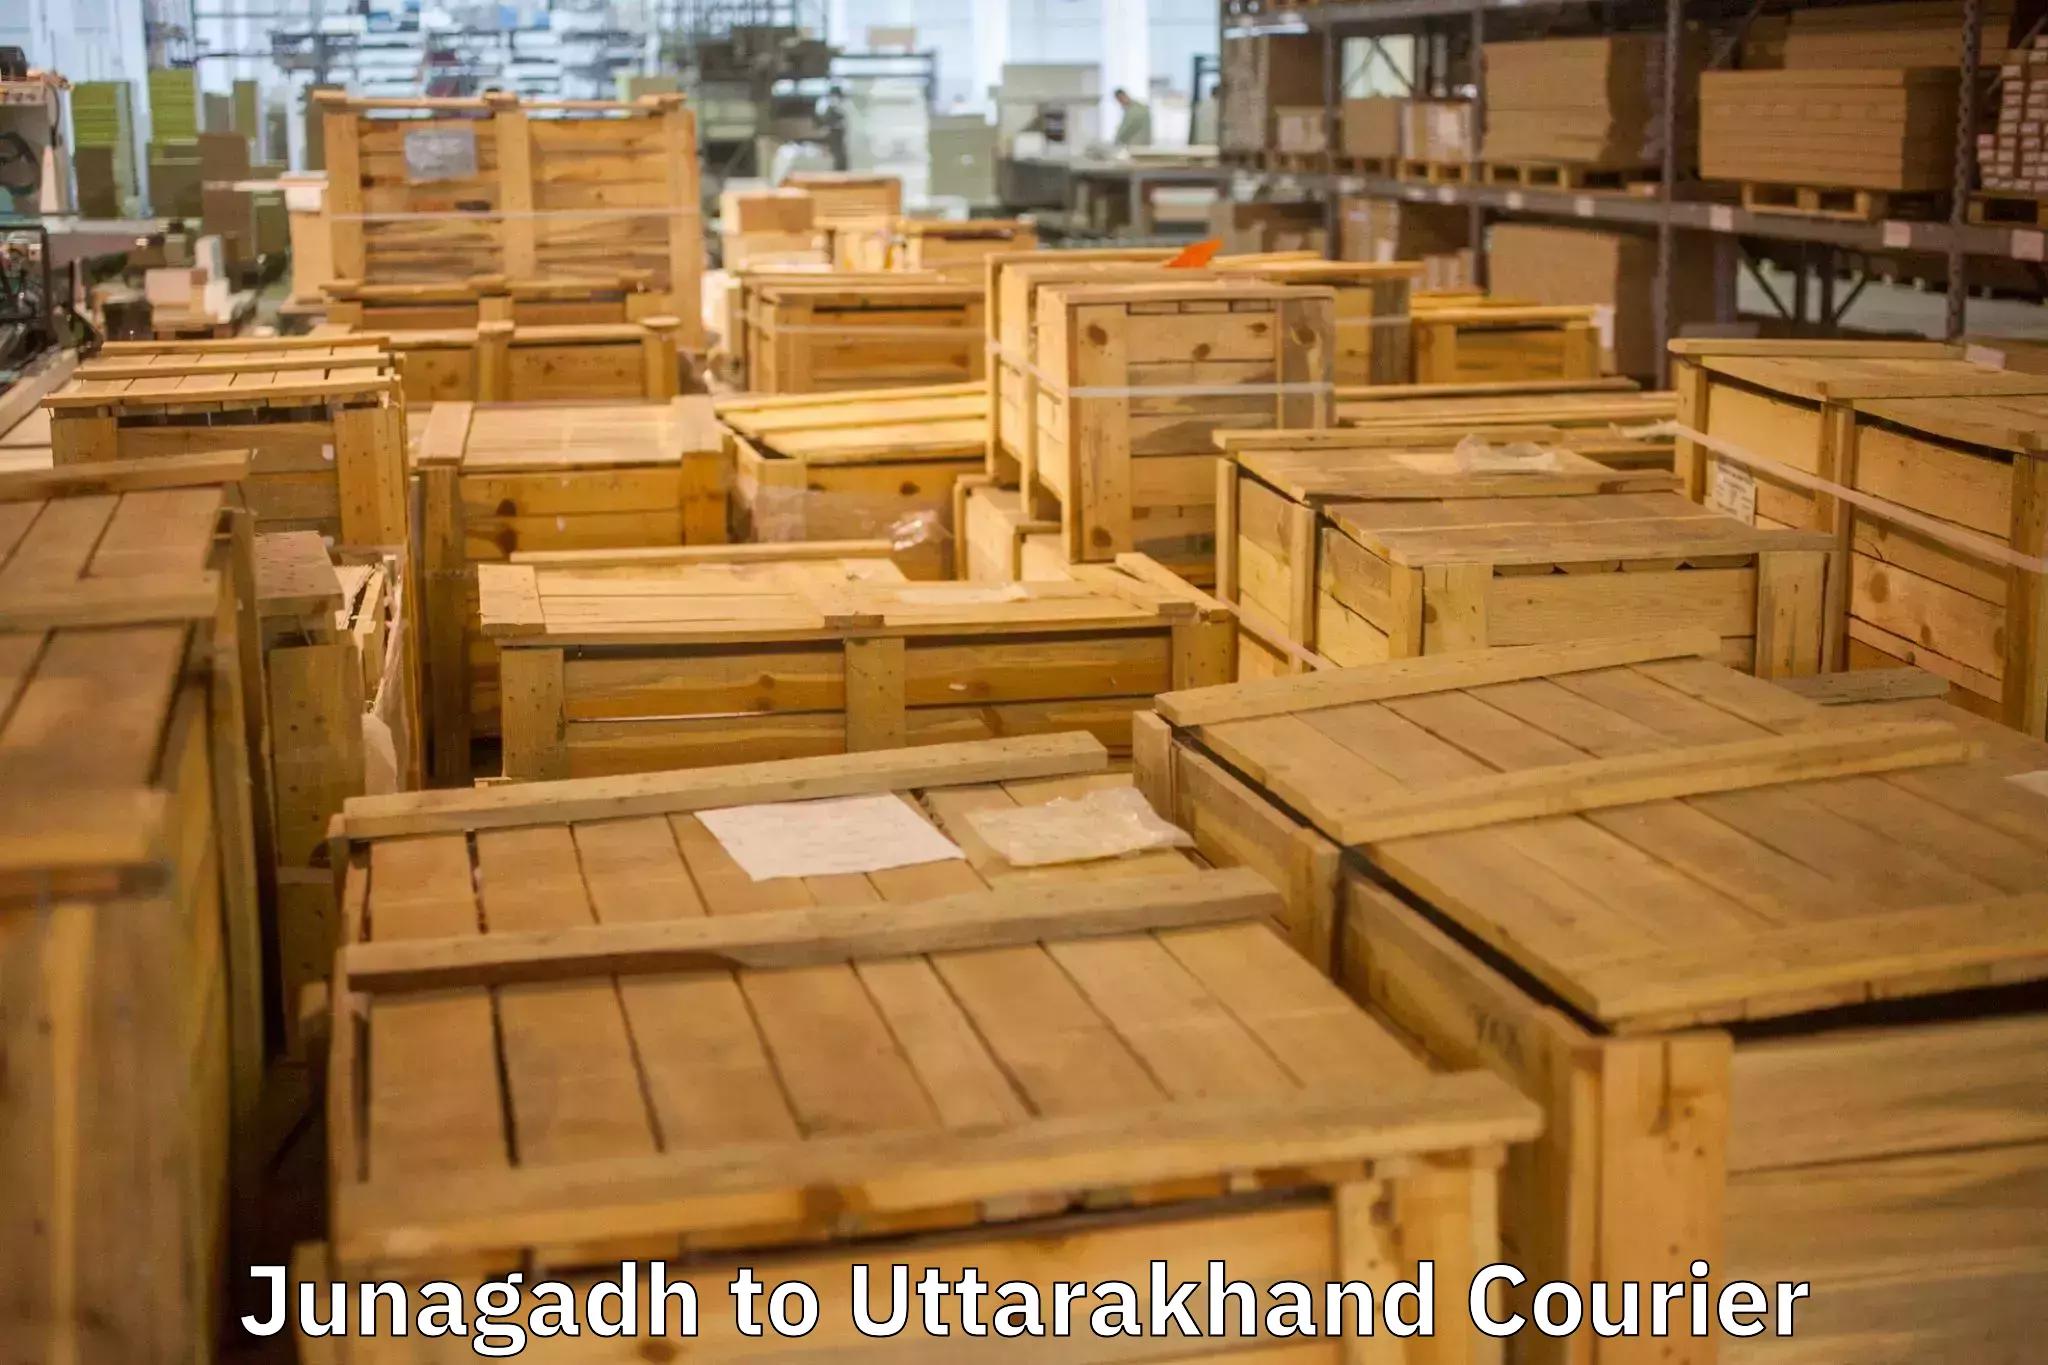 Efficient relocation services Junagadh to Uttarakhand